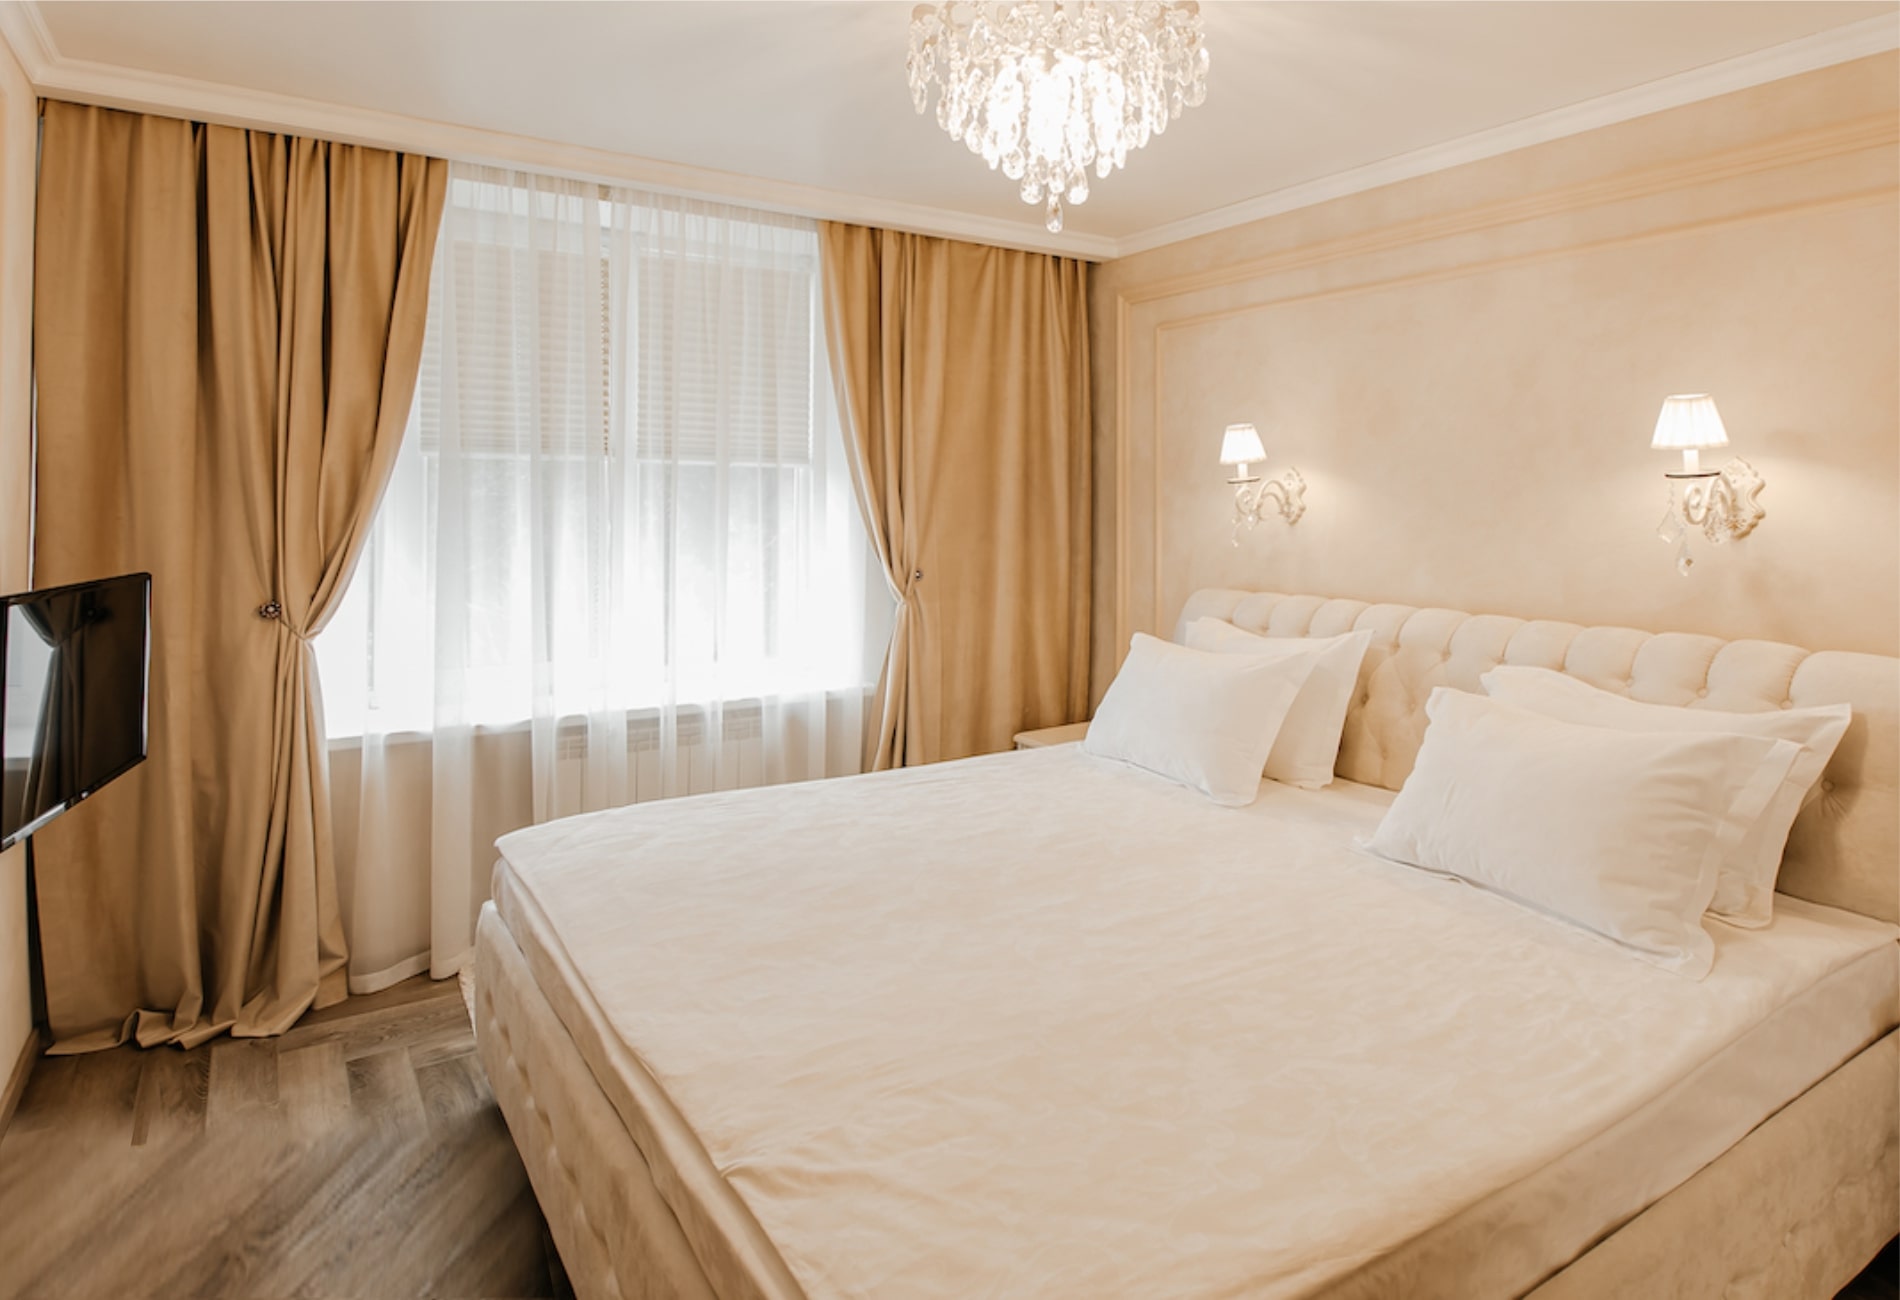 Представительские апартаменты — Гостиница Барнаул